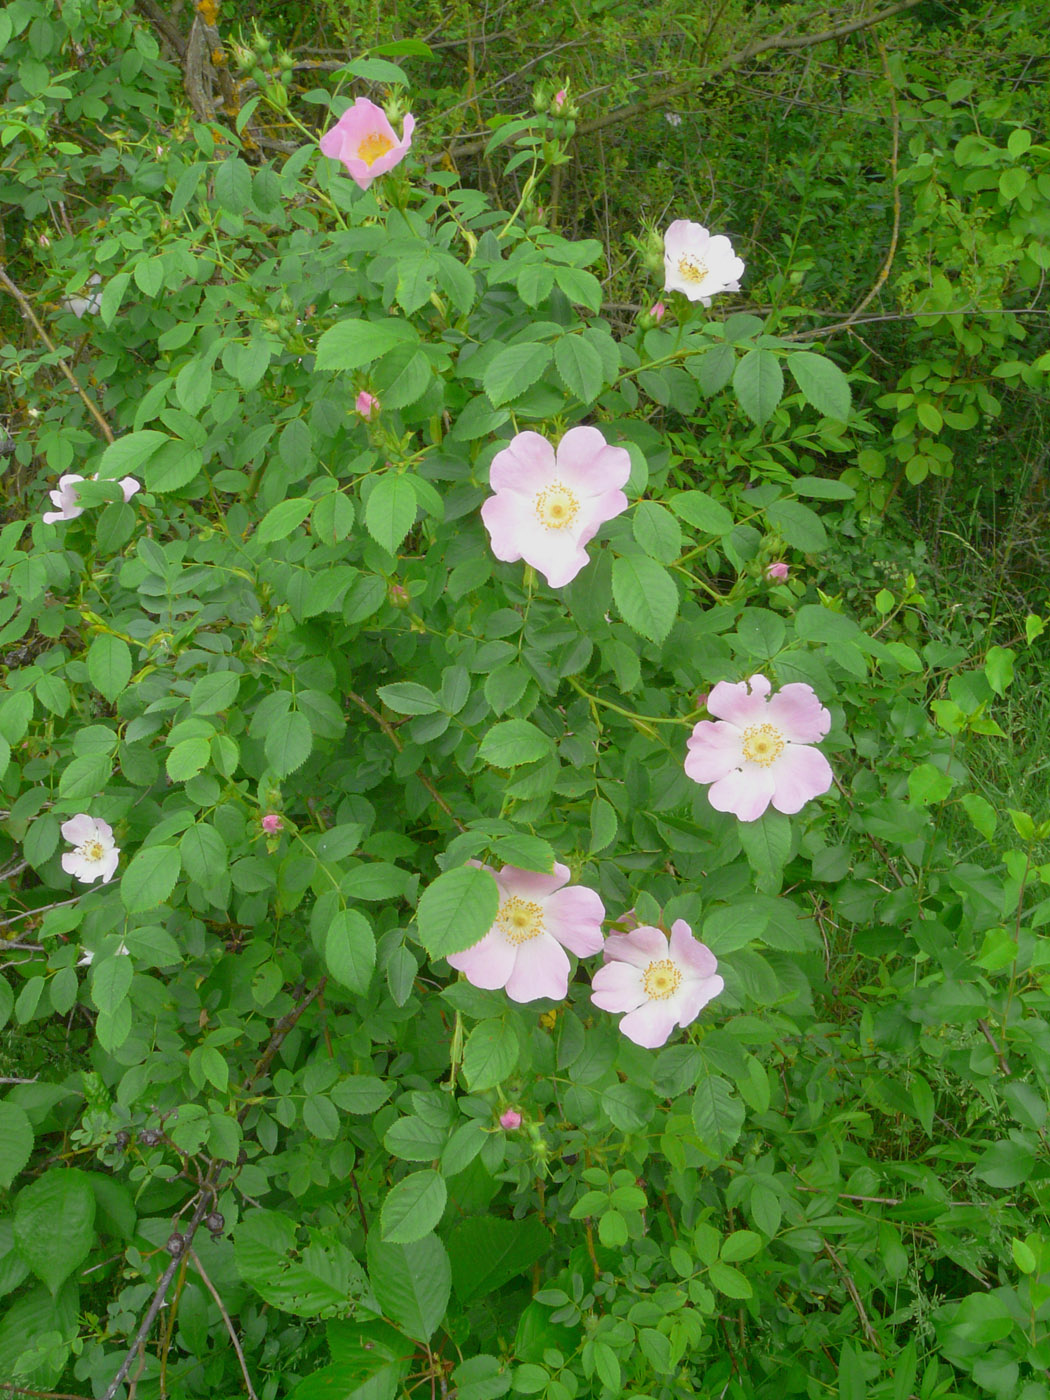 Image of genus Rosa specimen.